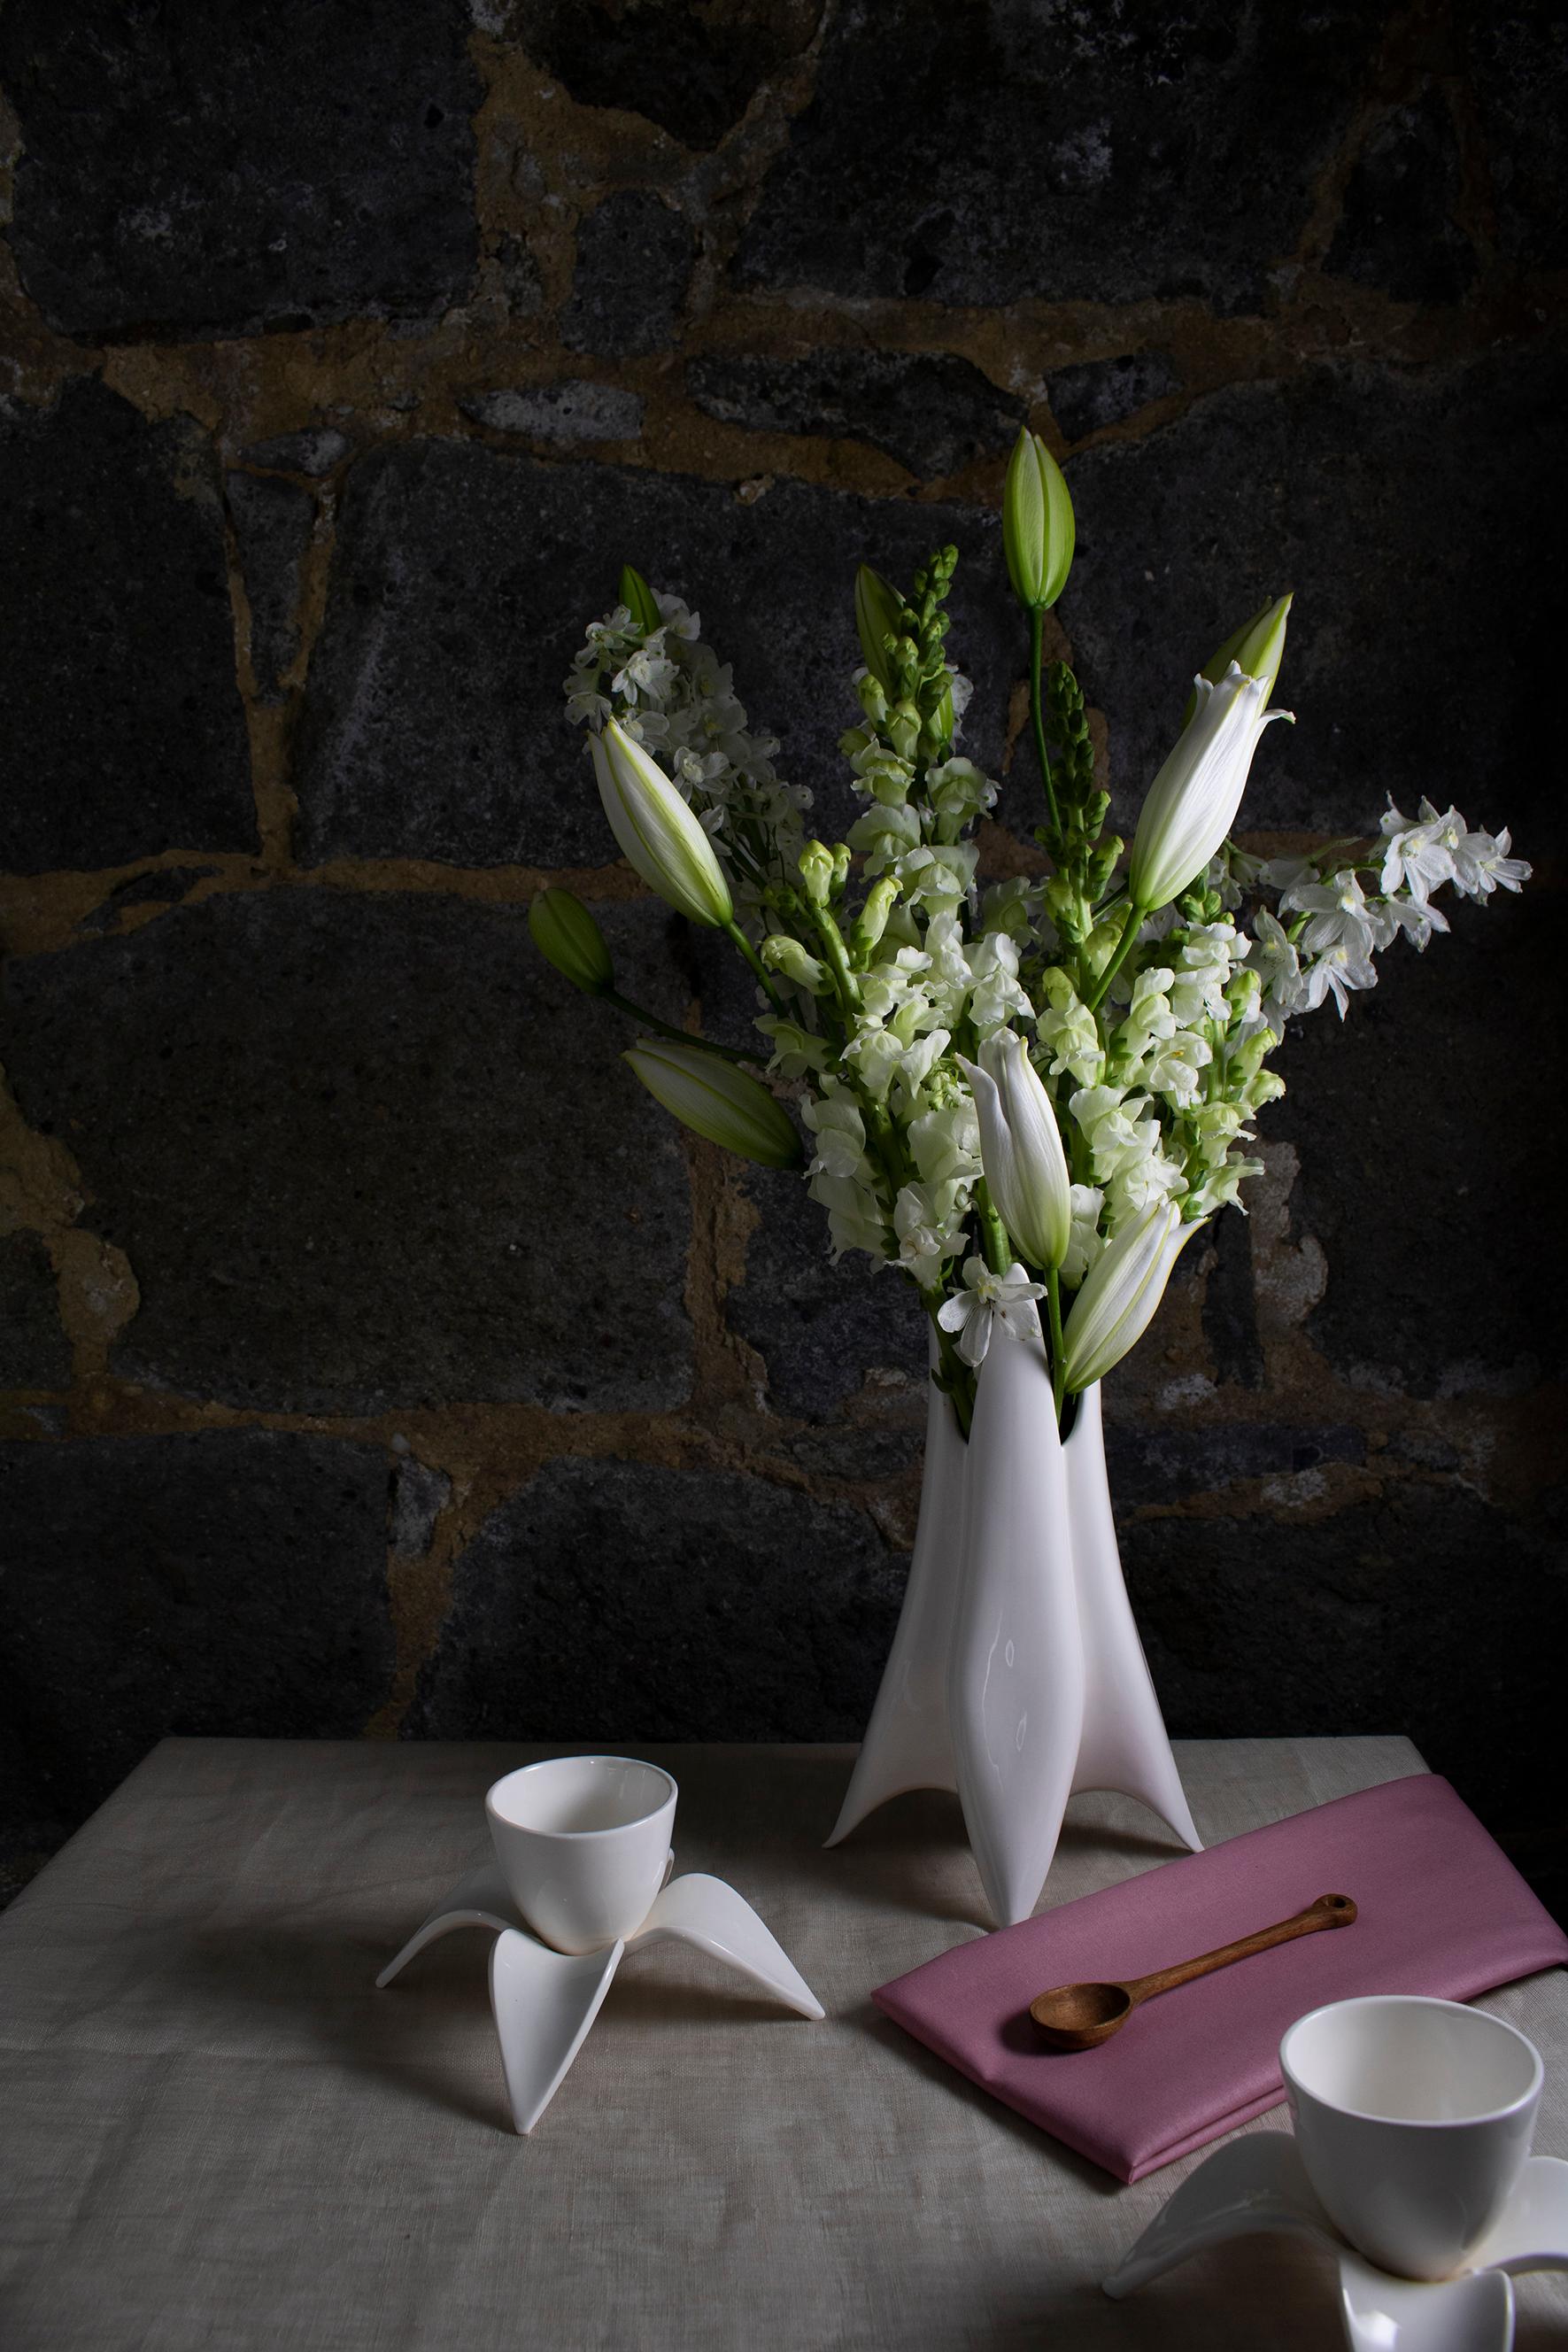 Voici le vase Abelia, une pièce magnifique et sophistiquée qui ajoutera une touche d'élégance à votre décoration intérieure. Fabriqué à la main en Nouvelle-Zélande, ce superbe vase est doté d'une base délicatement formée de pétales d'Abélia qui